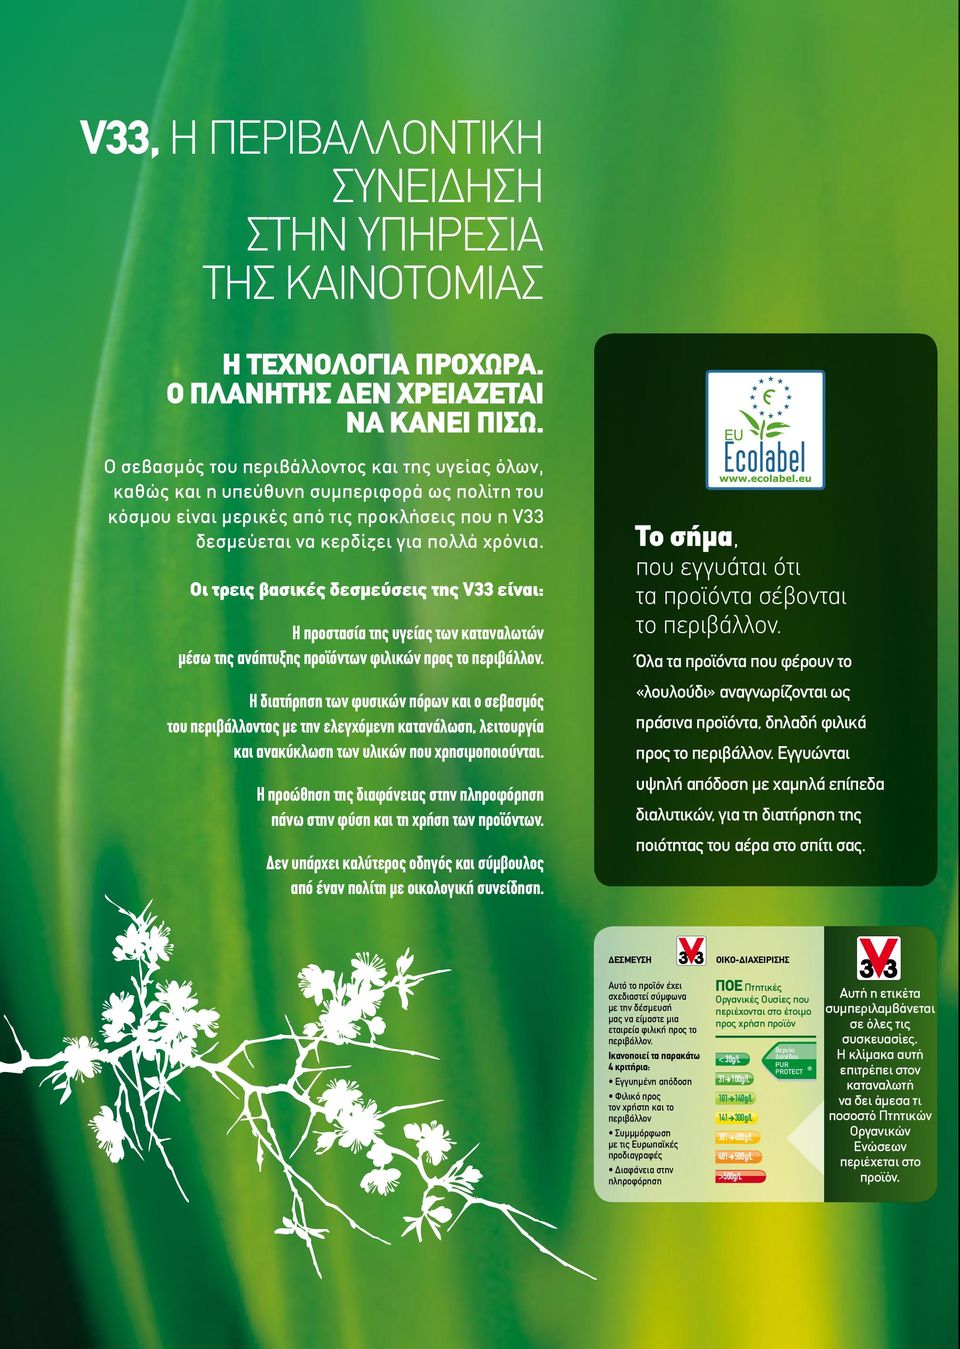 Οι τρεις βασικές δεσμεύσεις της V33 είναι: Η προστασία της υγείας των καταναλωτών μέσω της ανάπτυξης προϊόντων φιλικών προς το περιβάλλον.